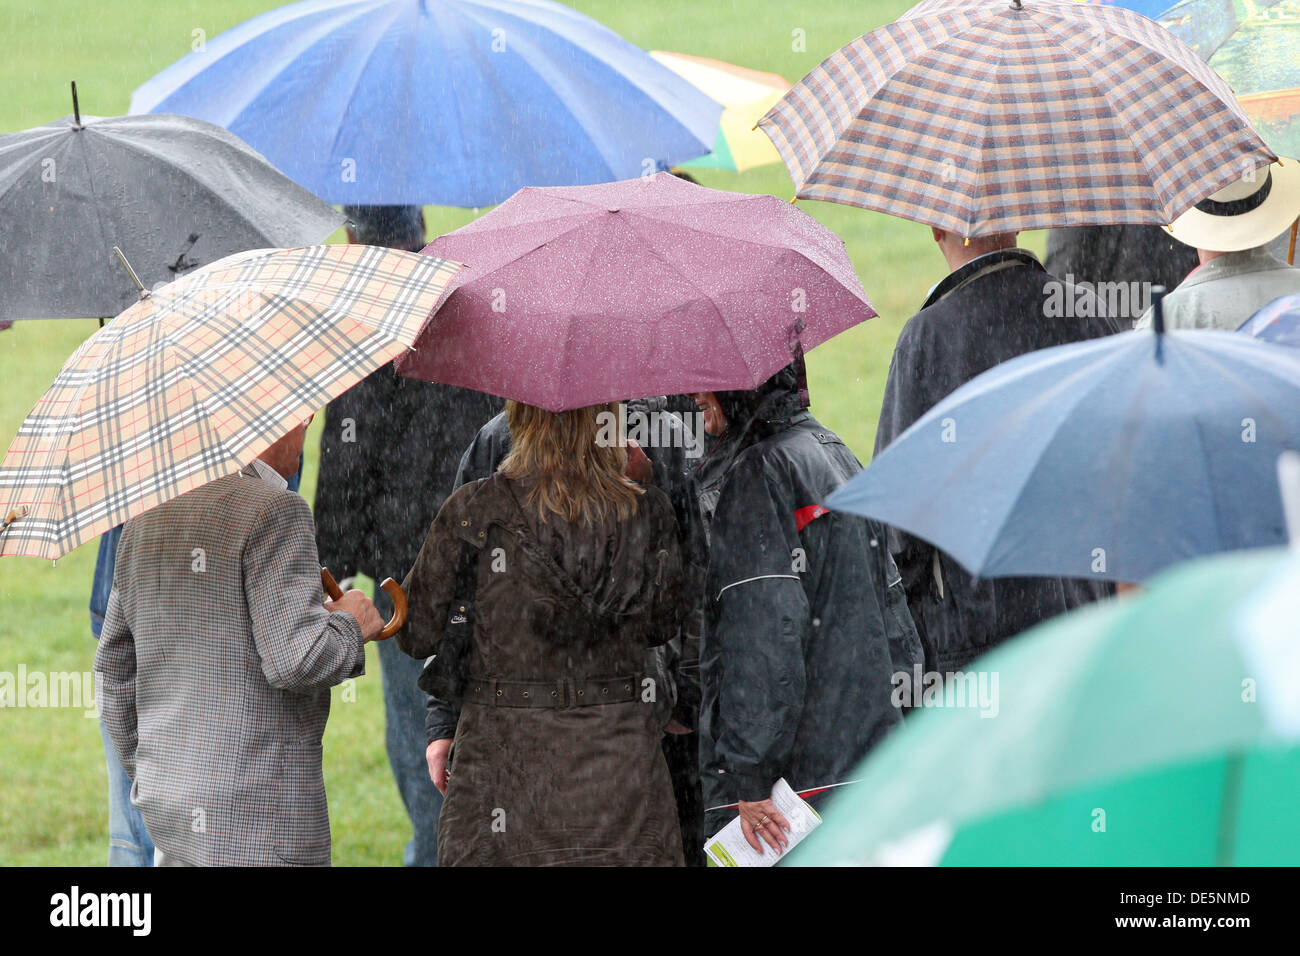 En Dusseldorf, Alemania, las personas están en condiciones de mal tiempo bajo su paraguas Foto de stock